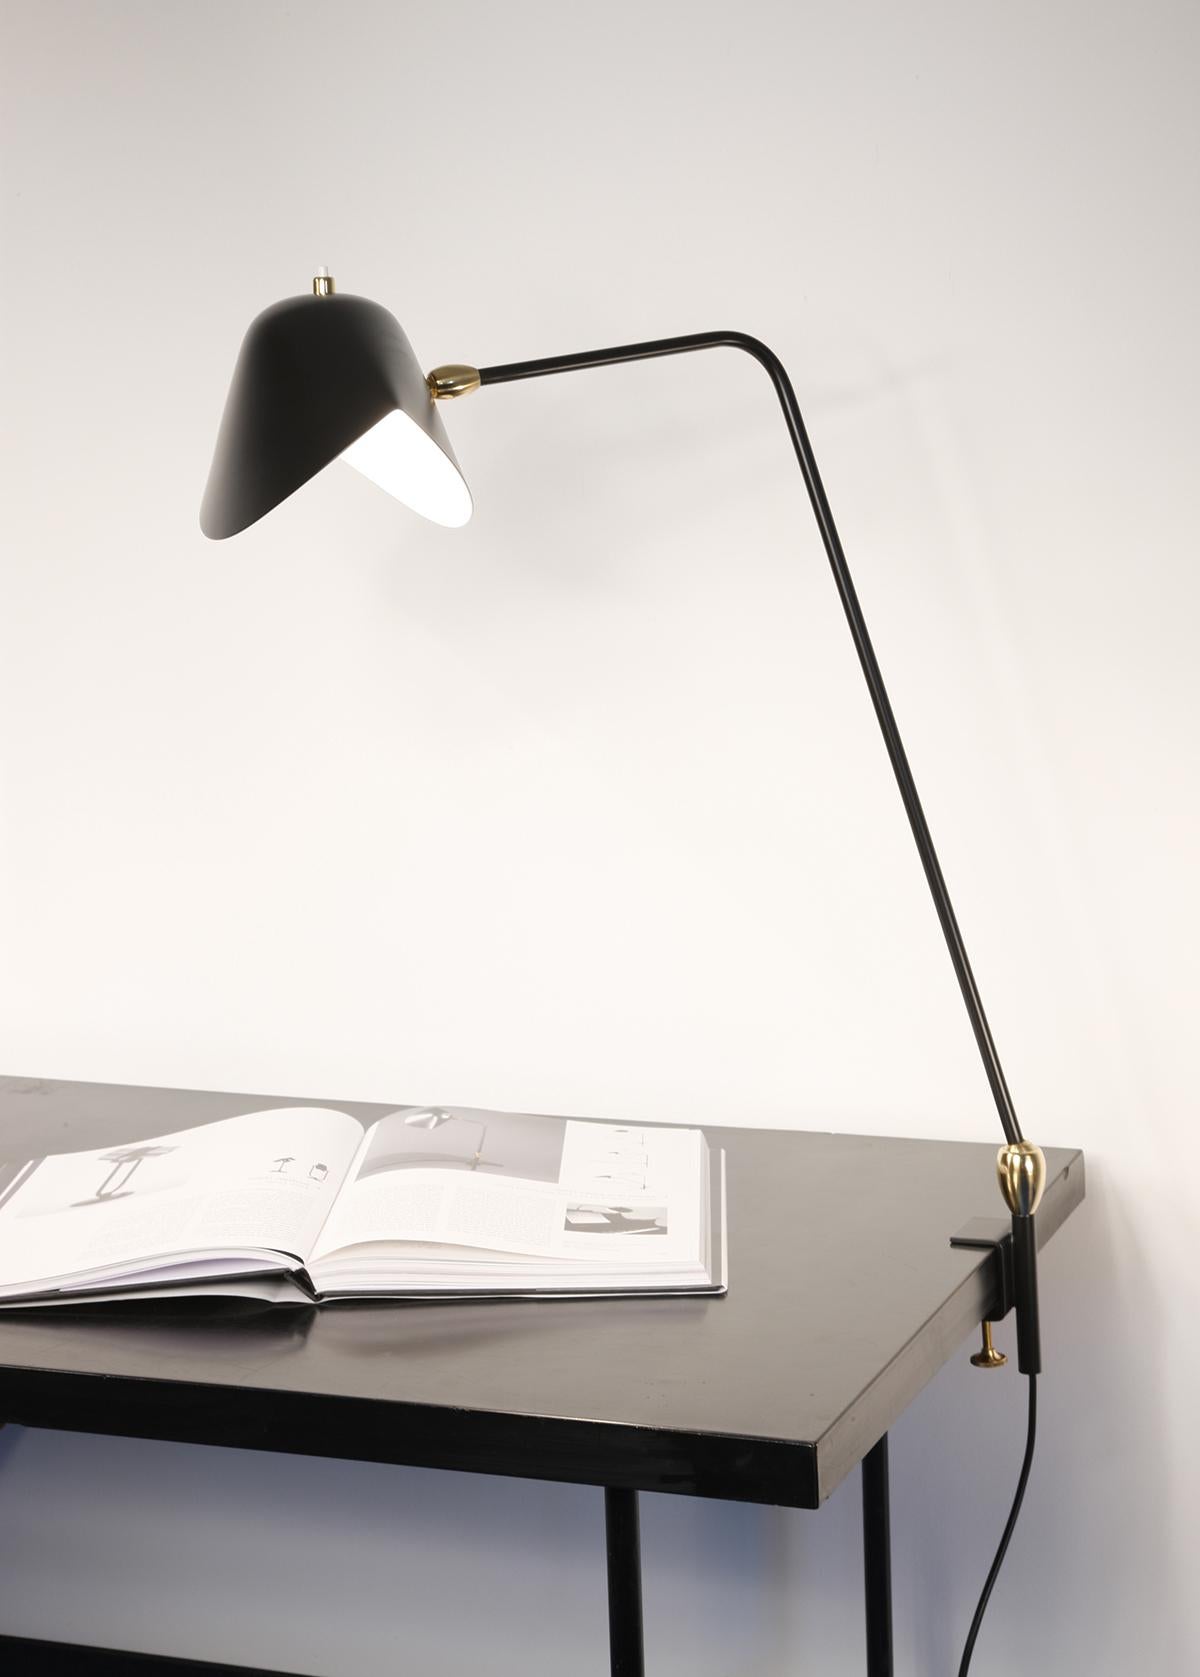 Lampe de table modèle 'Two Swivels Agrafée Table Lamp' conçue par Serge Mouille en 1957.

Fabriqué par les Editions Serge Mouille en France. La production des lampes, des appliques et des lampadaires est réalisée de manière artisanale avec les mêmes